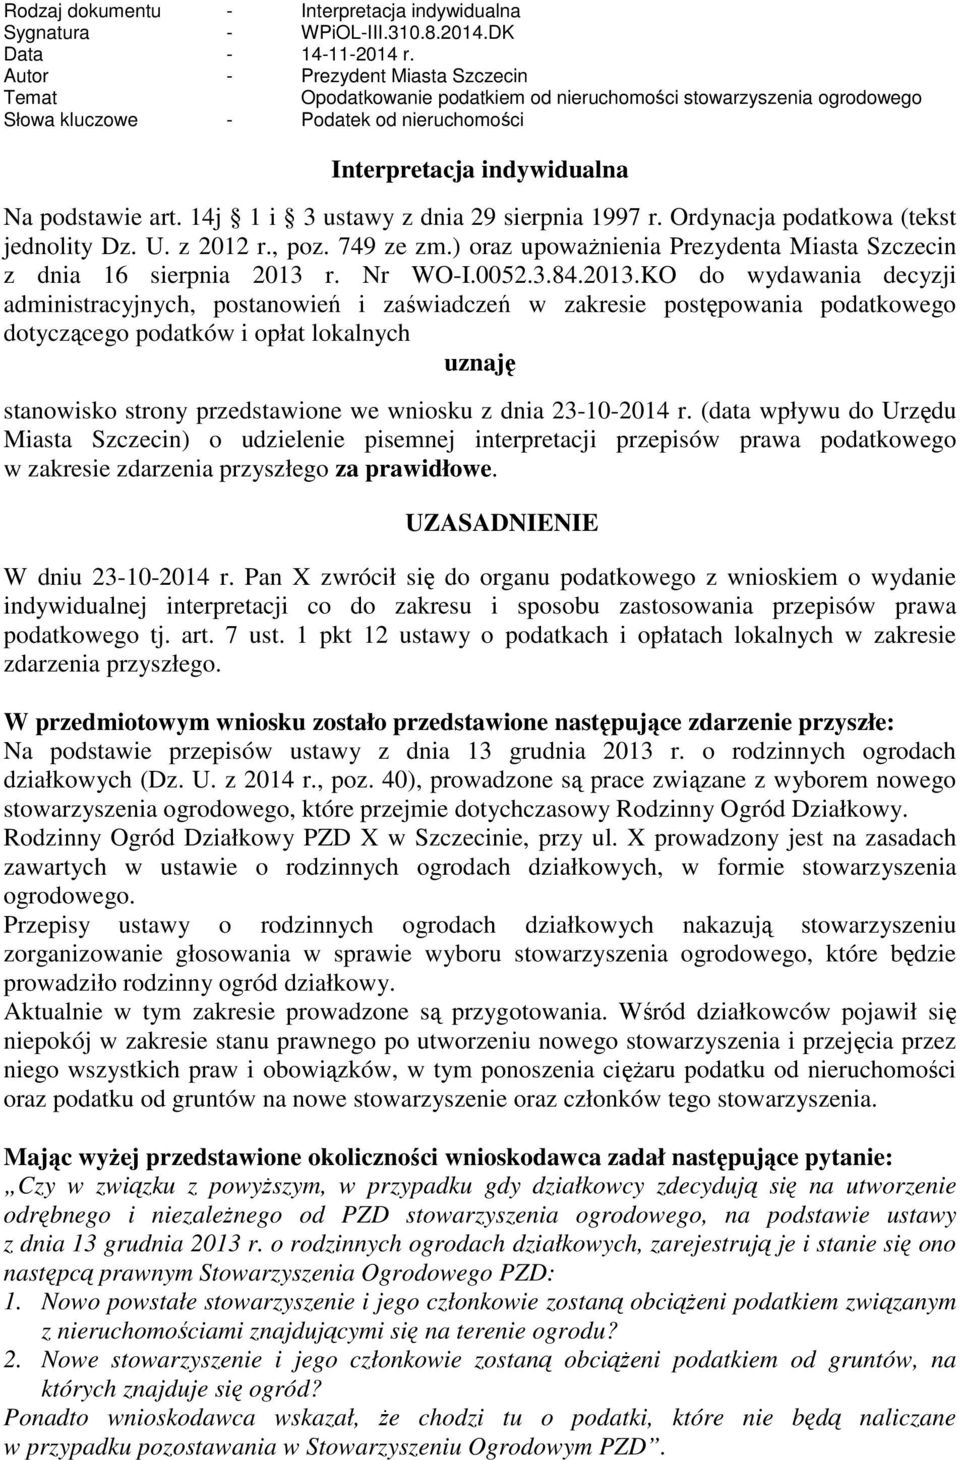 14j 1 i 3 ustawy z dnia 29 sierpnia 1997 r. Ordynacja podatkowa (tekst jednolity Dz. U. z 2012 r., poz. 749 ze zm.) oraz upowaŝnienia Prezydenta Miasta Szczecin z dnia 16 sierpnia 2013 r. Nr WO-I.